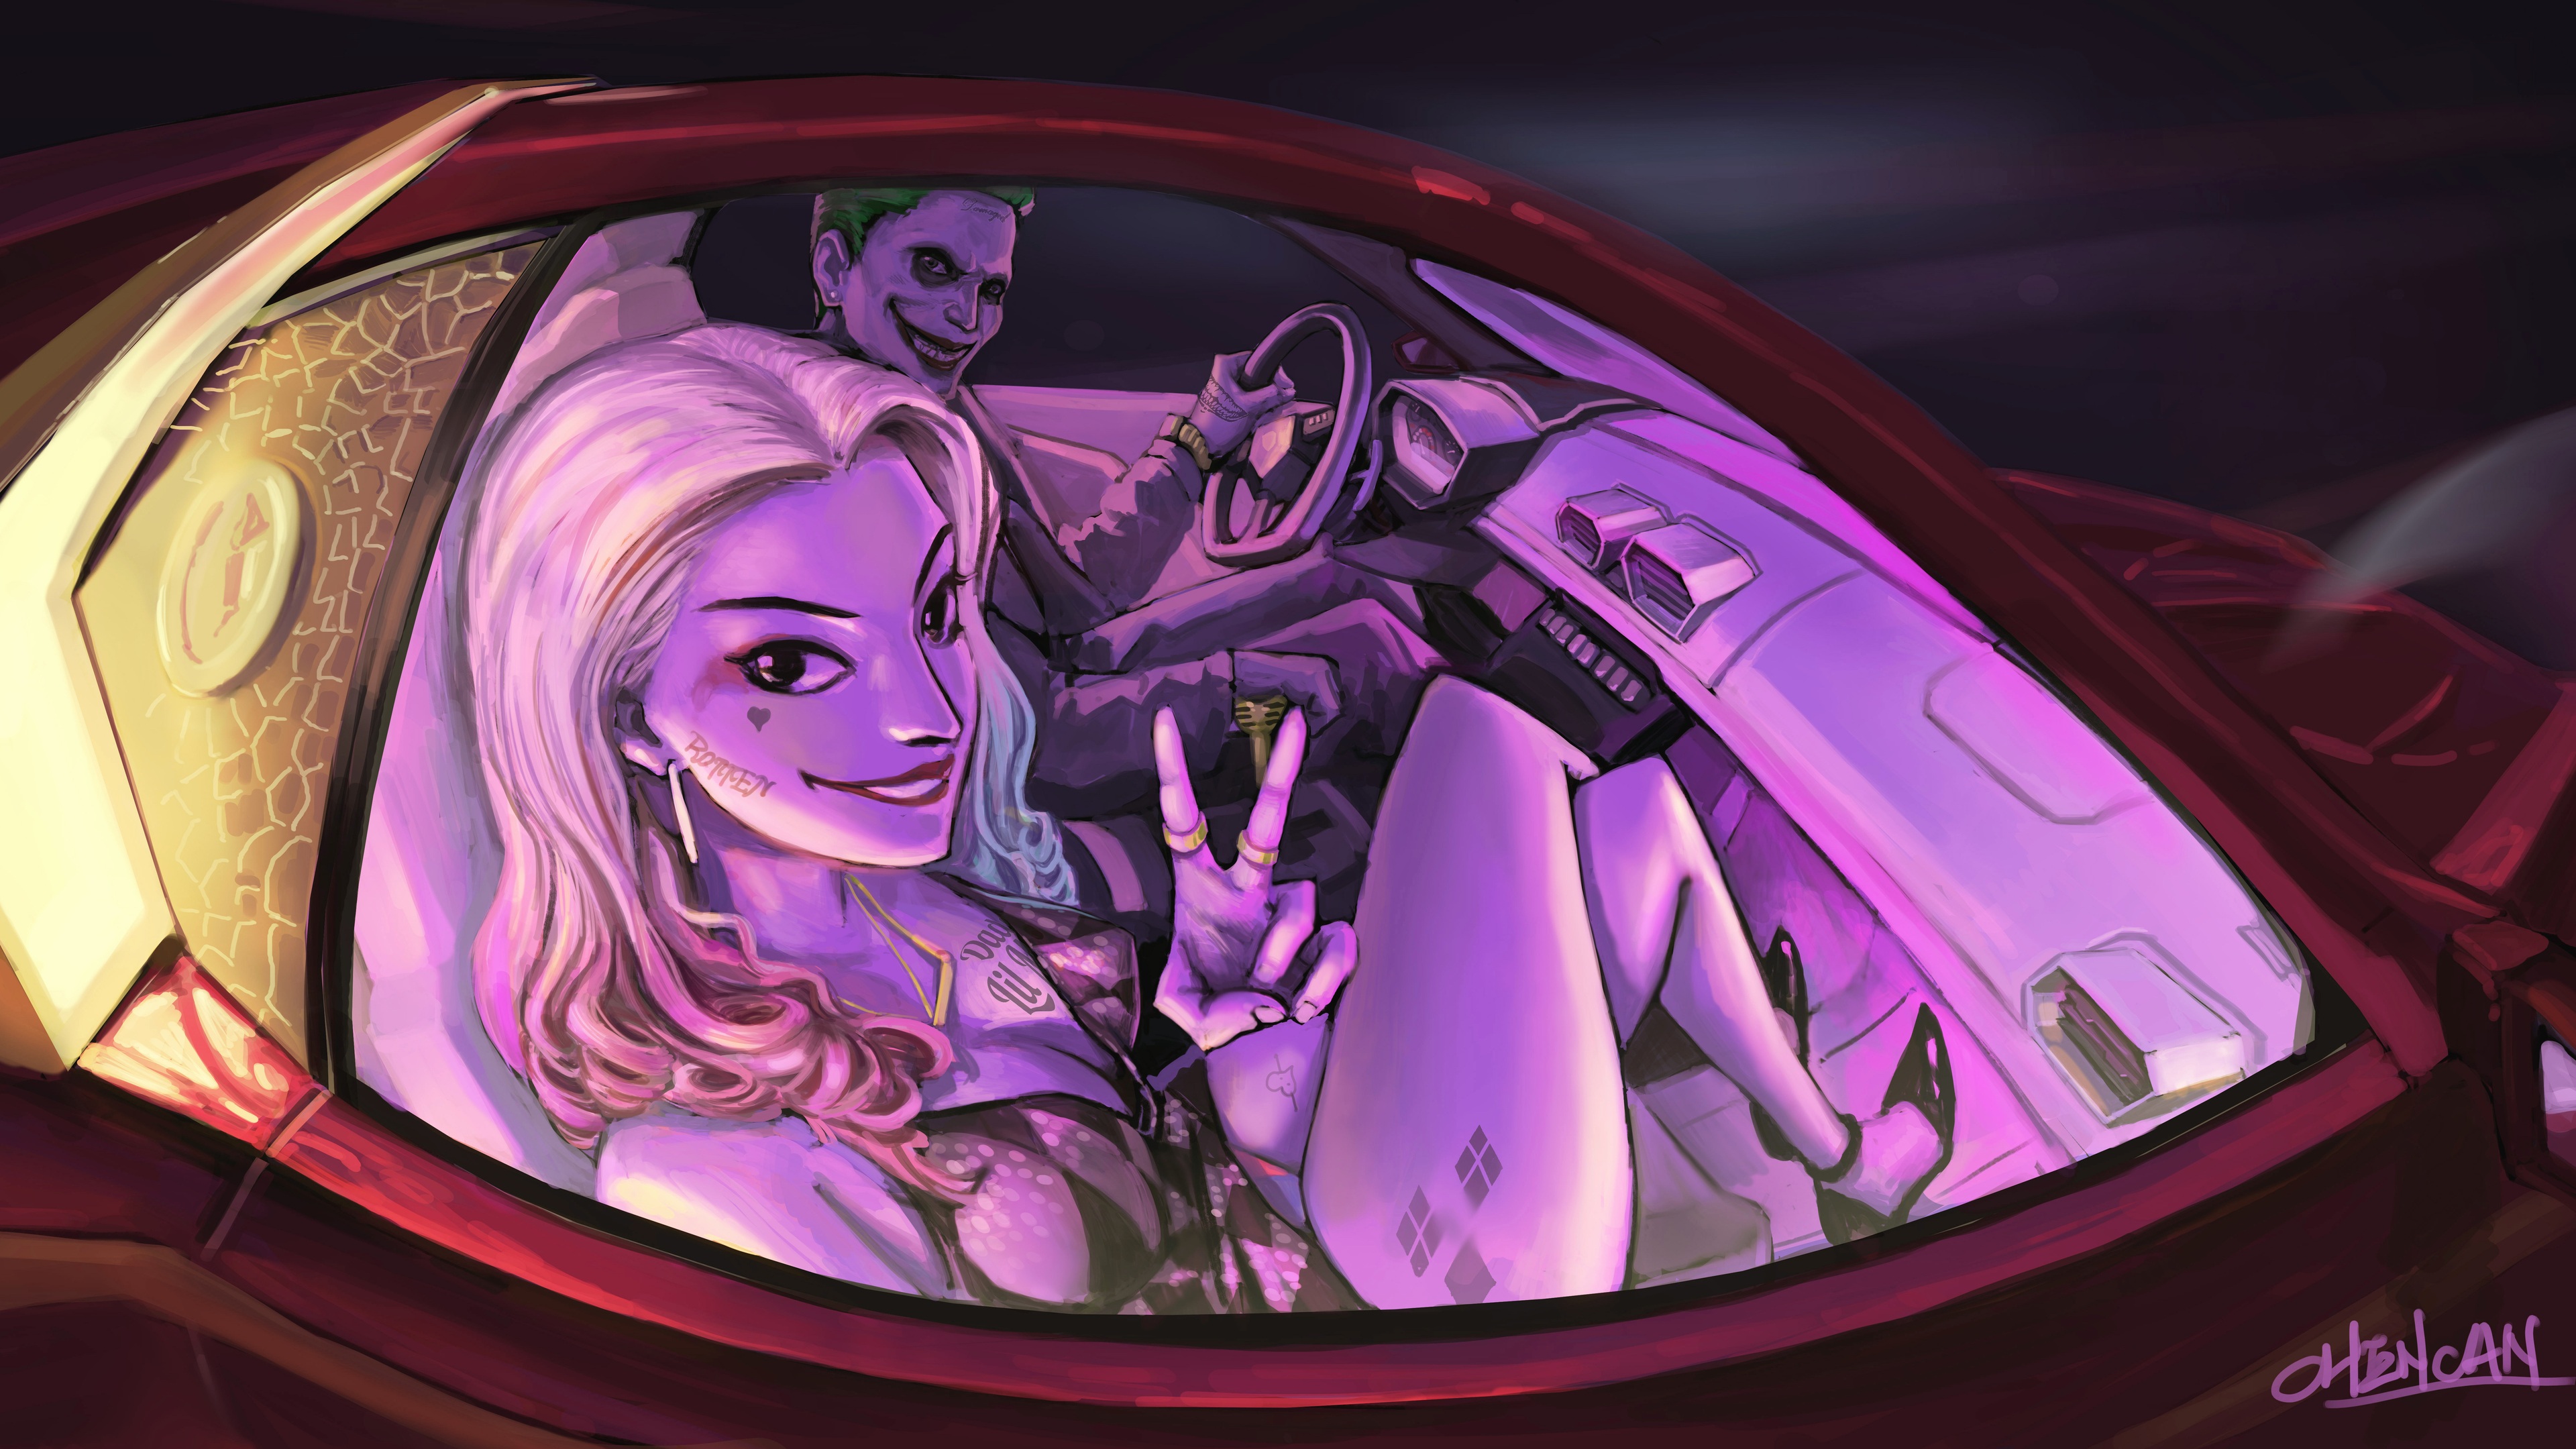 Wallpaper 4k Joker And Harley Quinn In The Car Artwork 4k Wallpaper